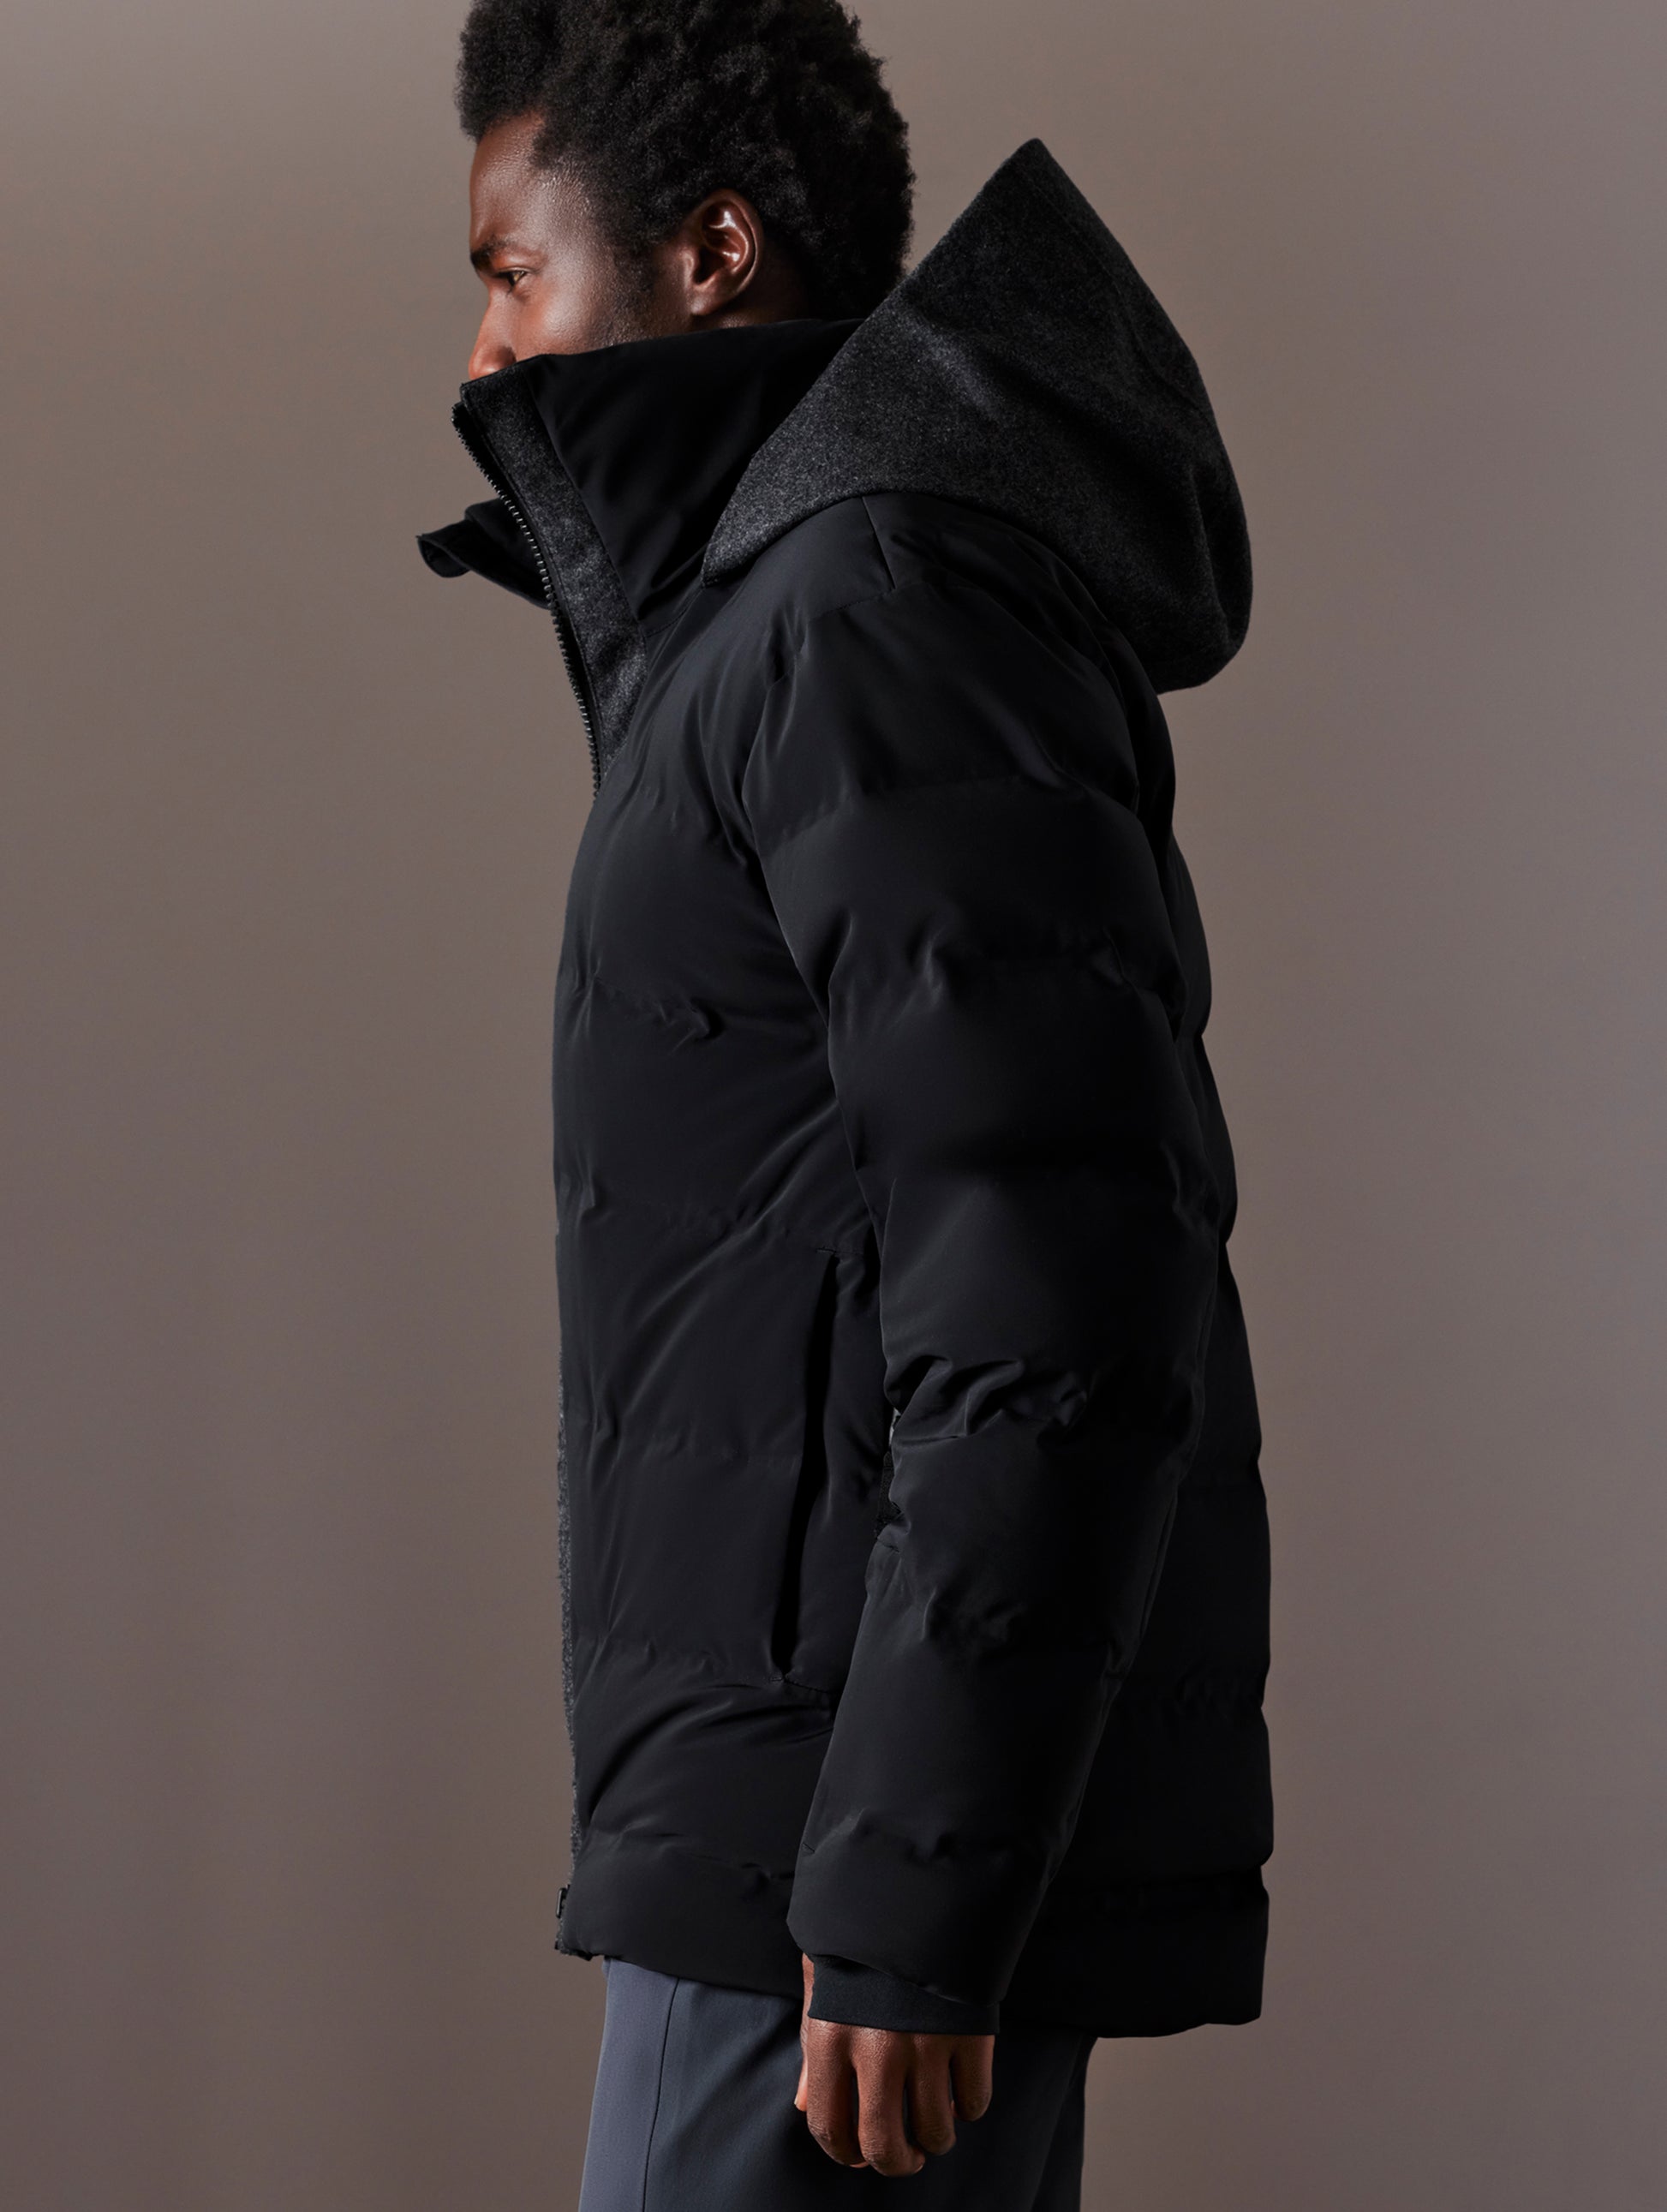 Man wearing black ski jacket